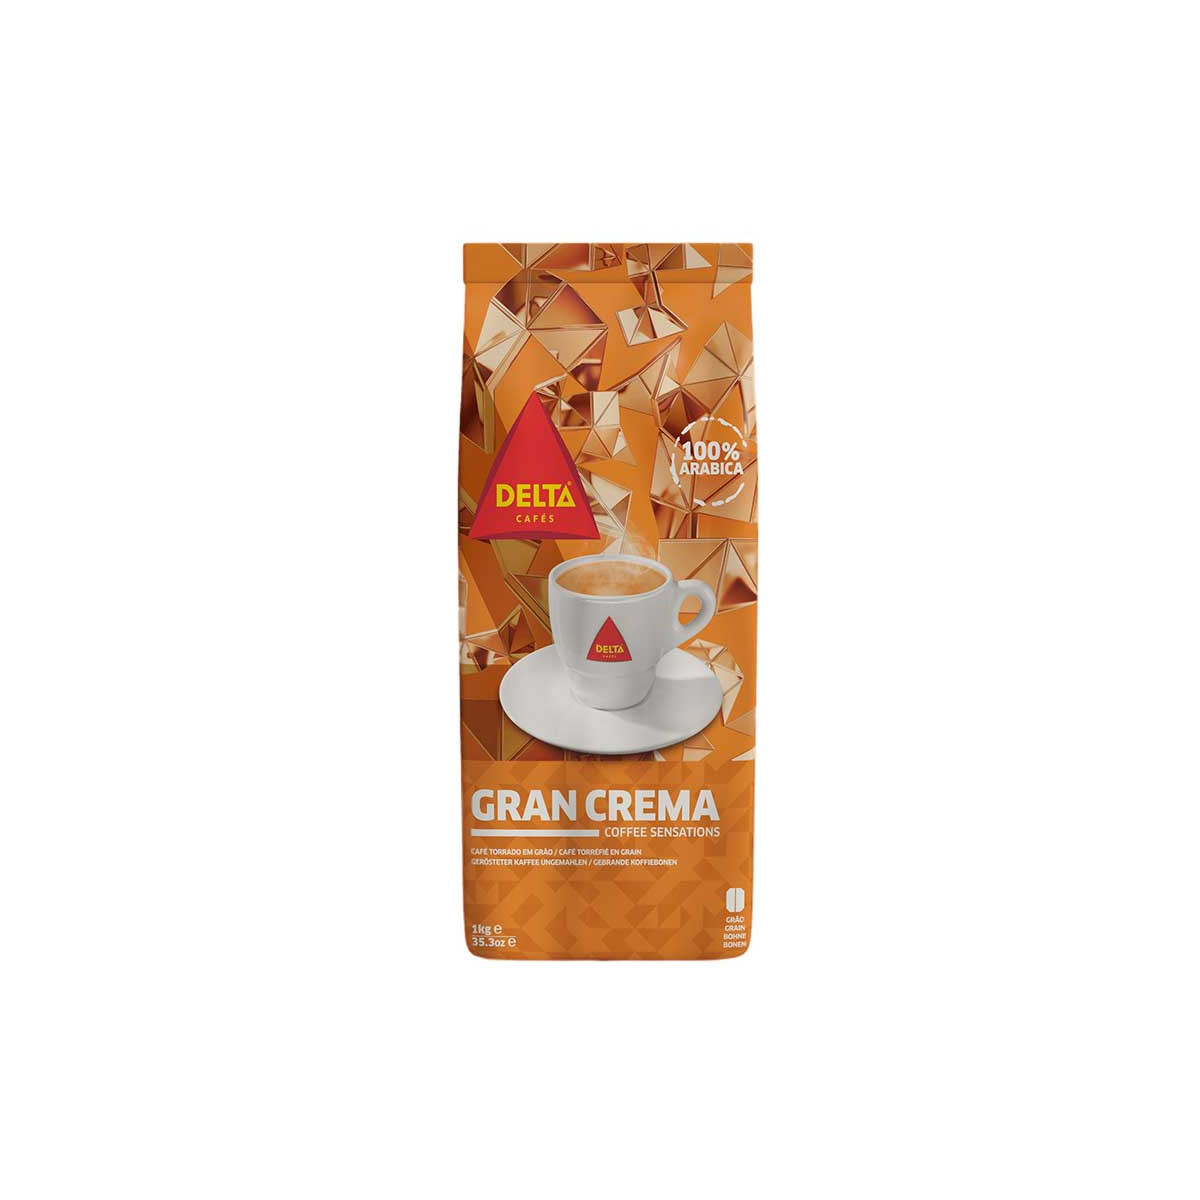 Café en grains DELTA CAFES GRAN ESPRESSO 1 kg - MAPALGA CAFES